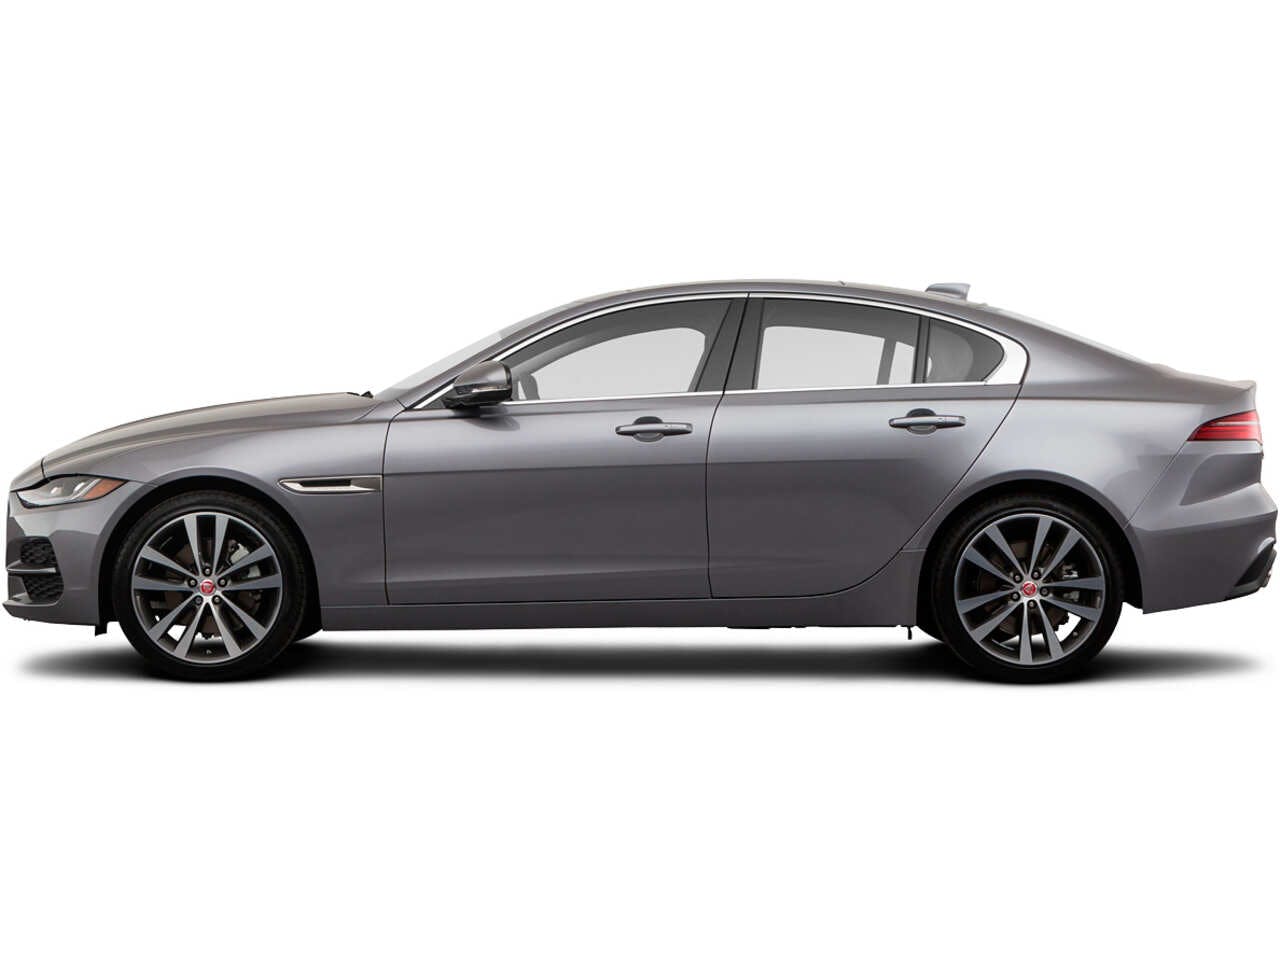 Présentation: nouvelle Jaguar XE